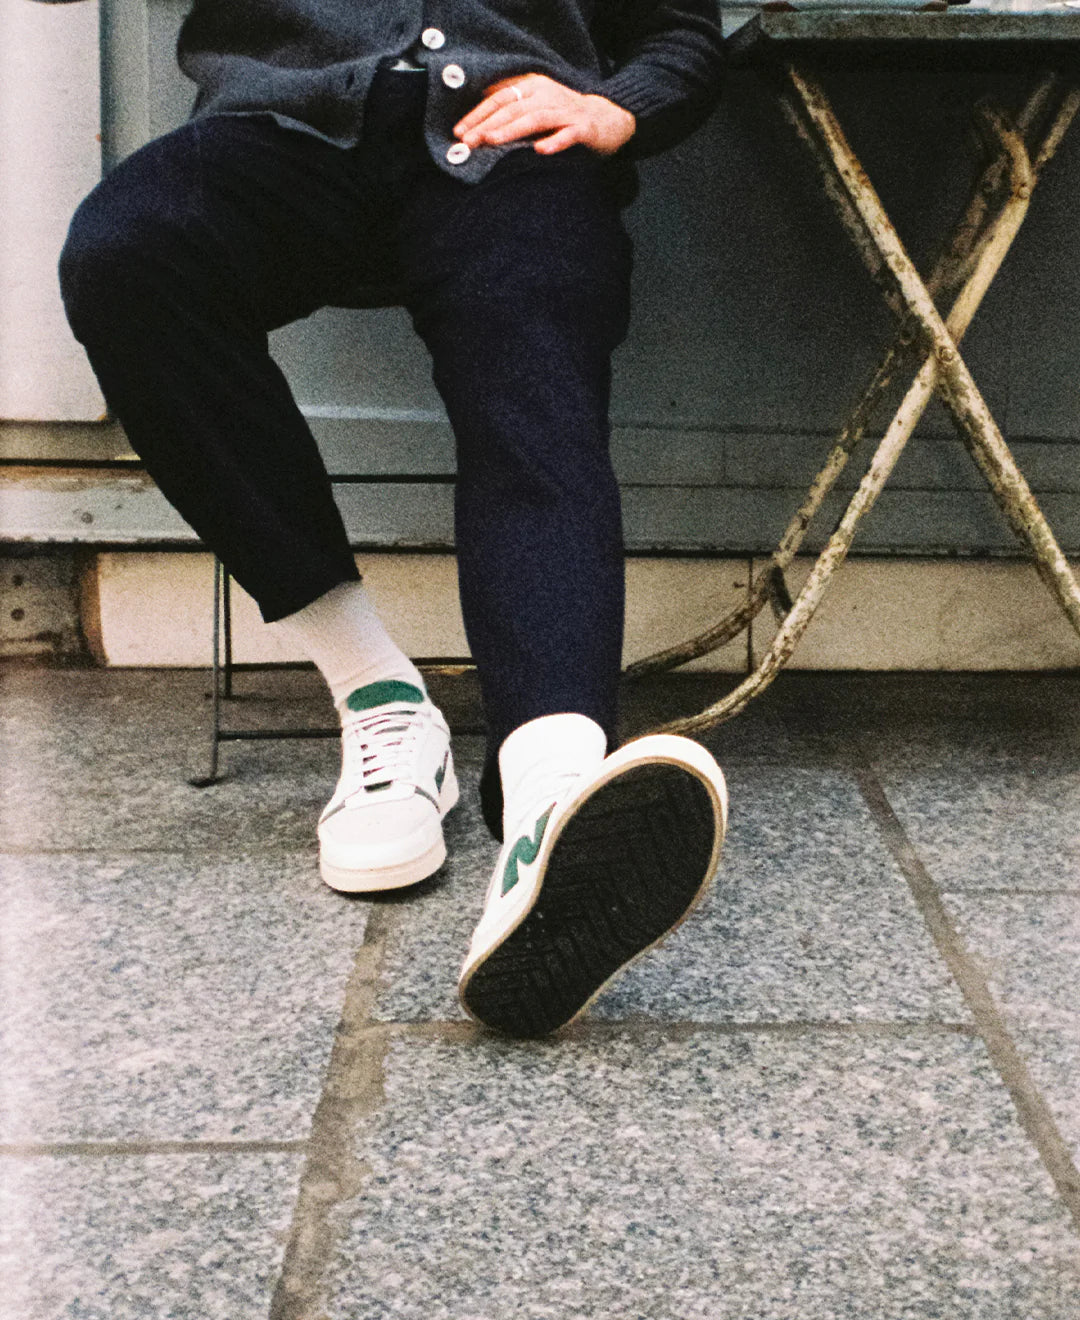 homme assis à une table, les jambes croisées portant des chaussures blanches noyoco